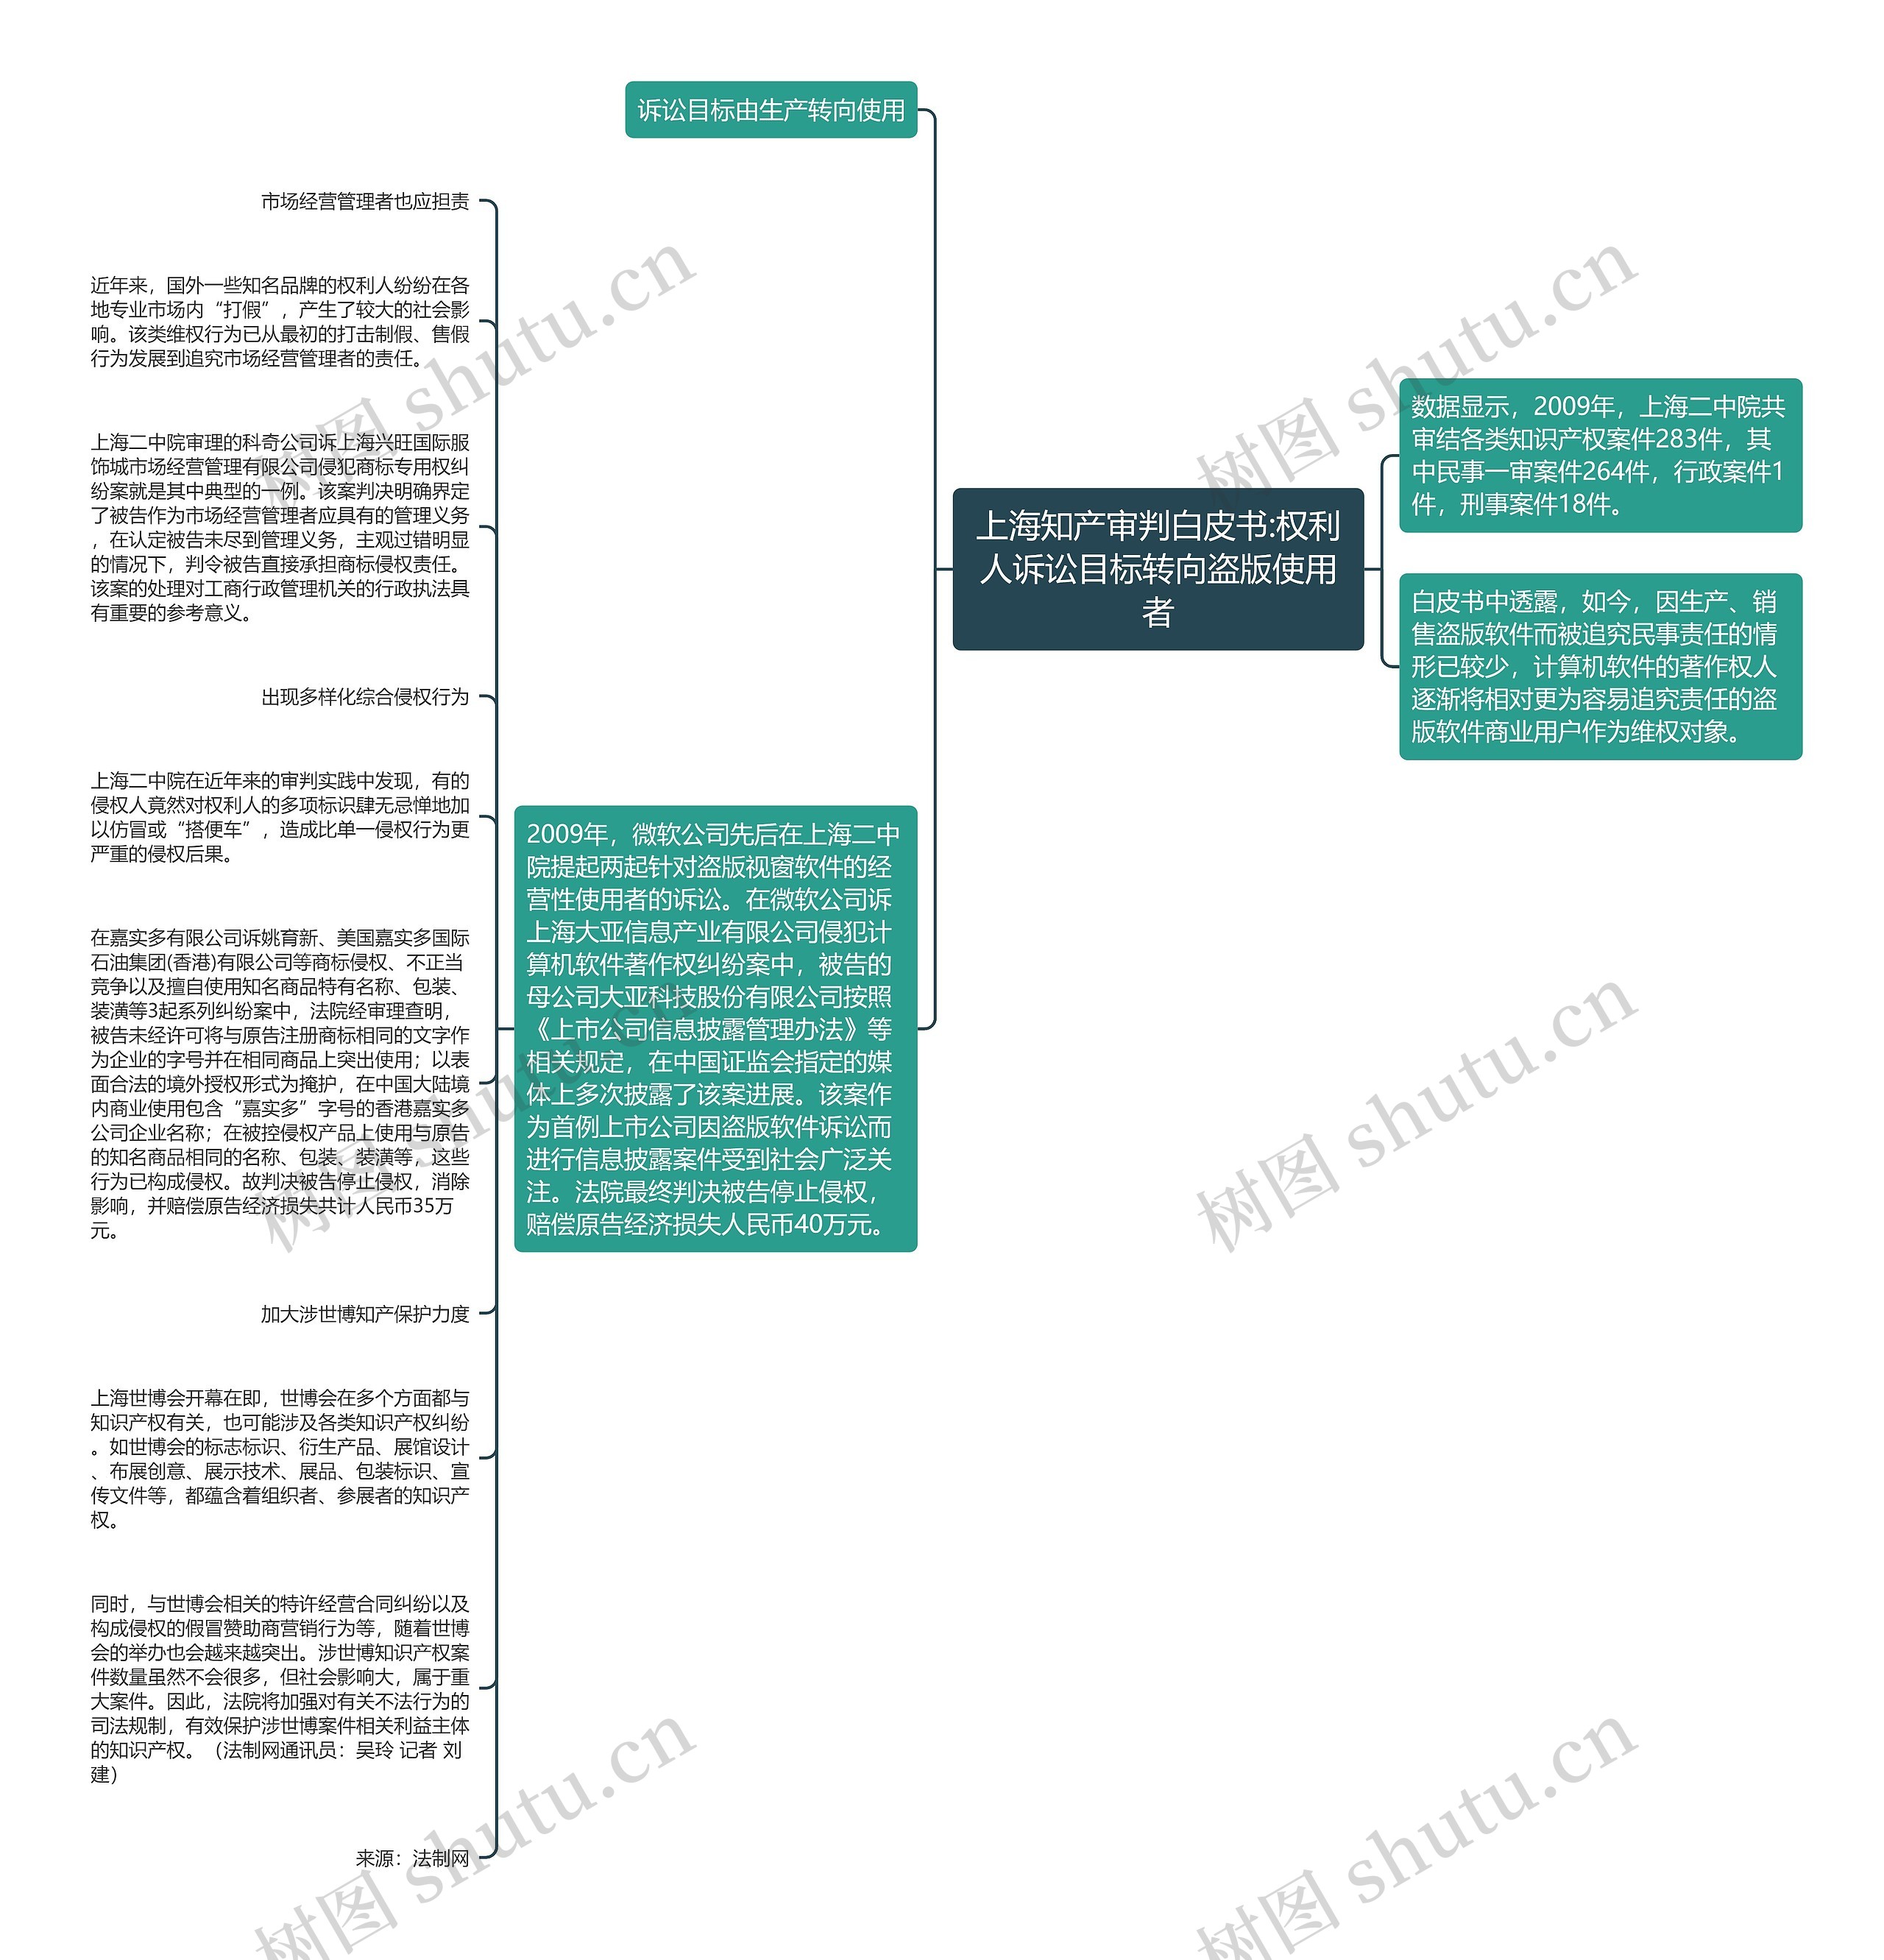 上海知产审判白皮书:权利人诉讼目标转向盗版使用者